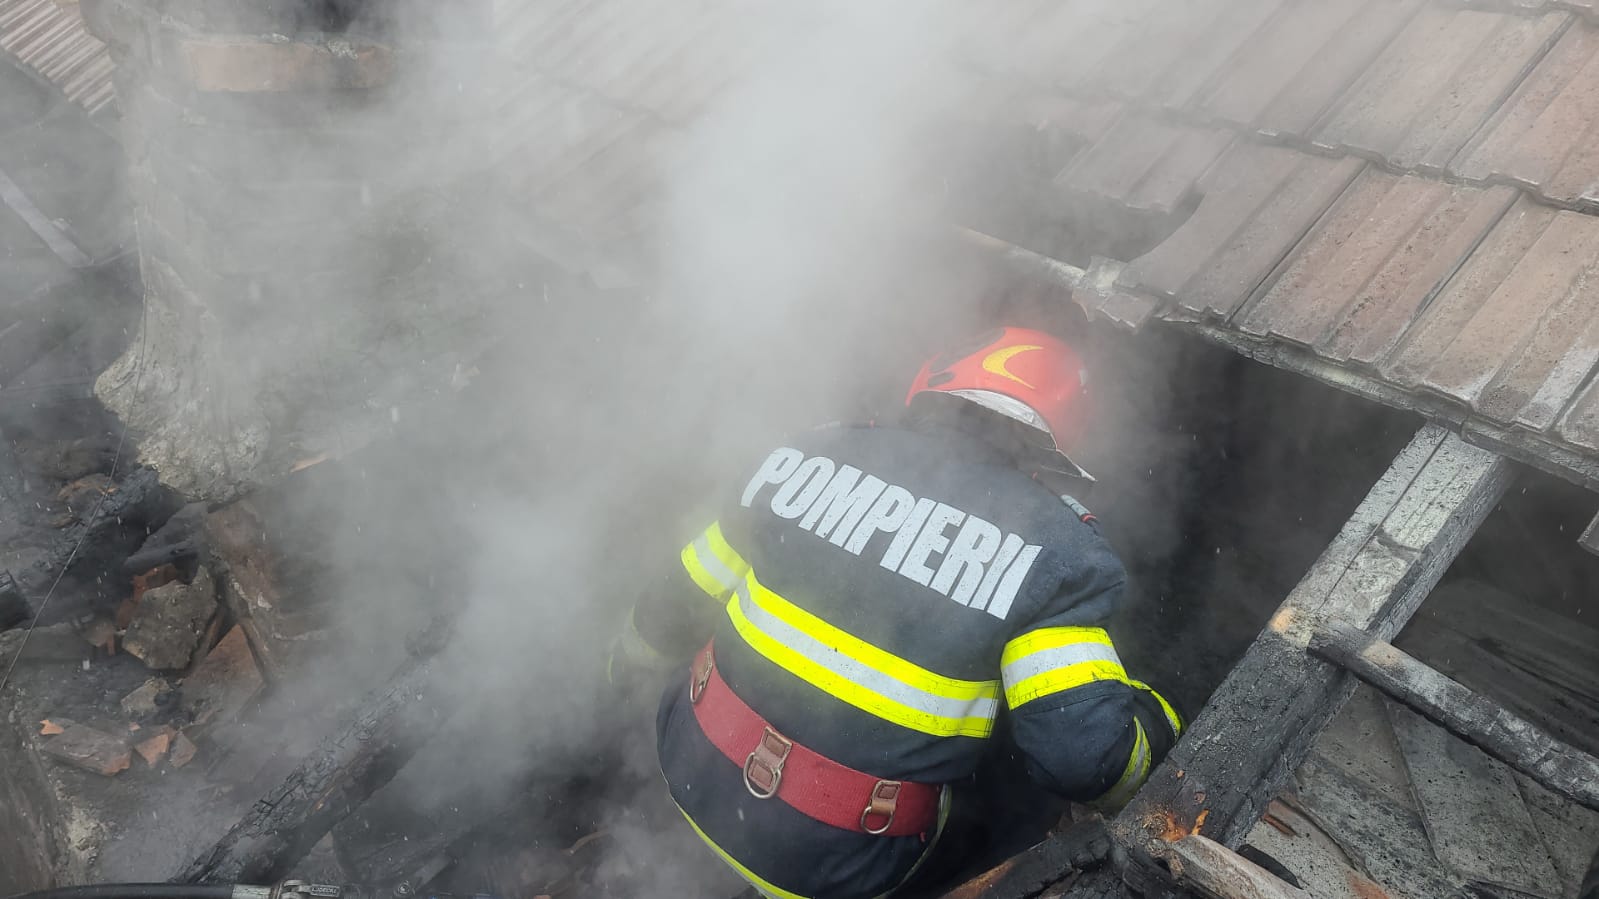 Incendiu la acoperișul unei anexe gospodărești din Târnava. Focul s-a extins la casa vecină